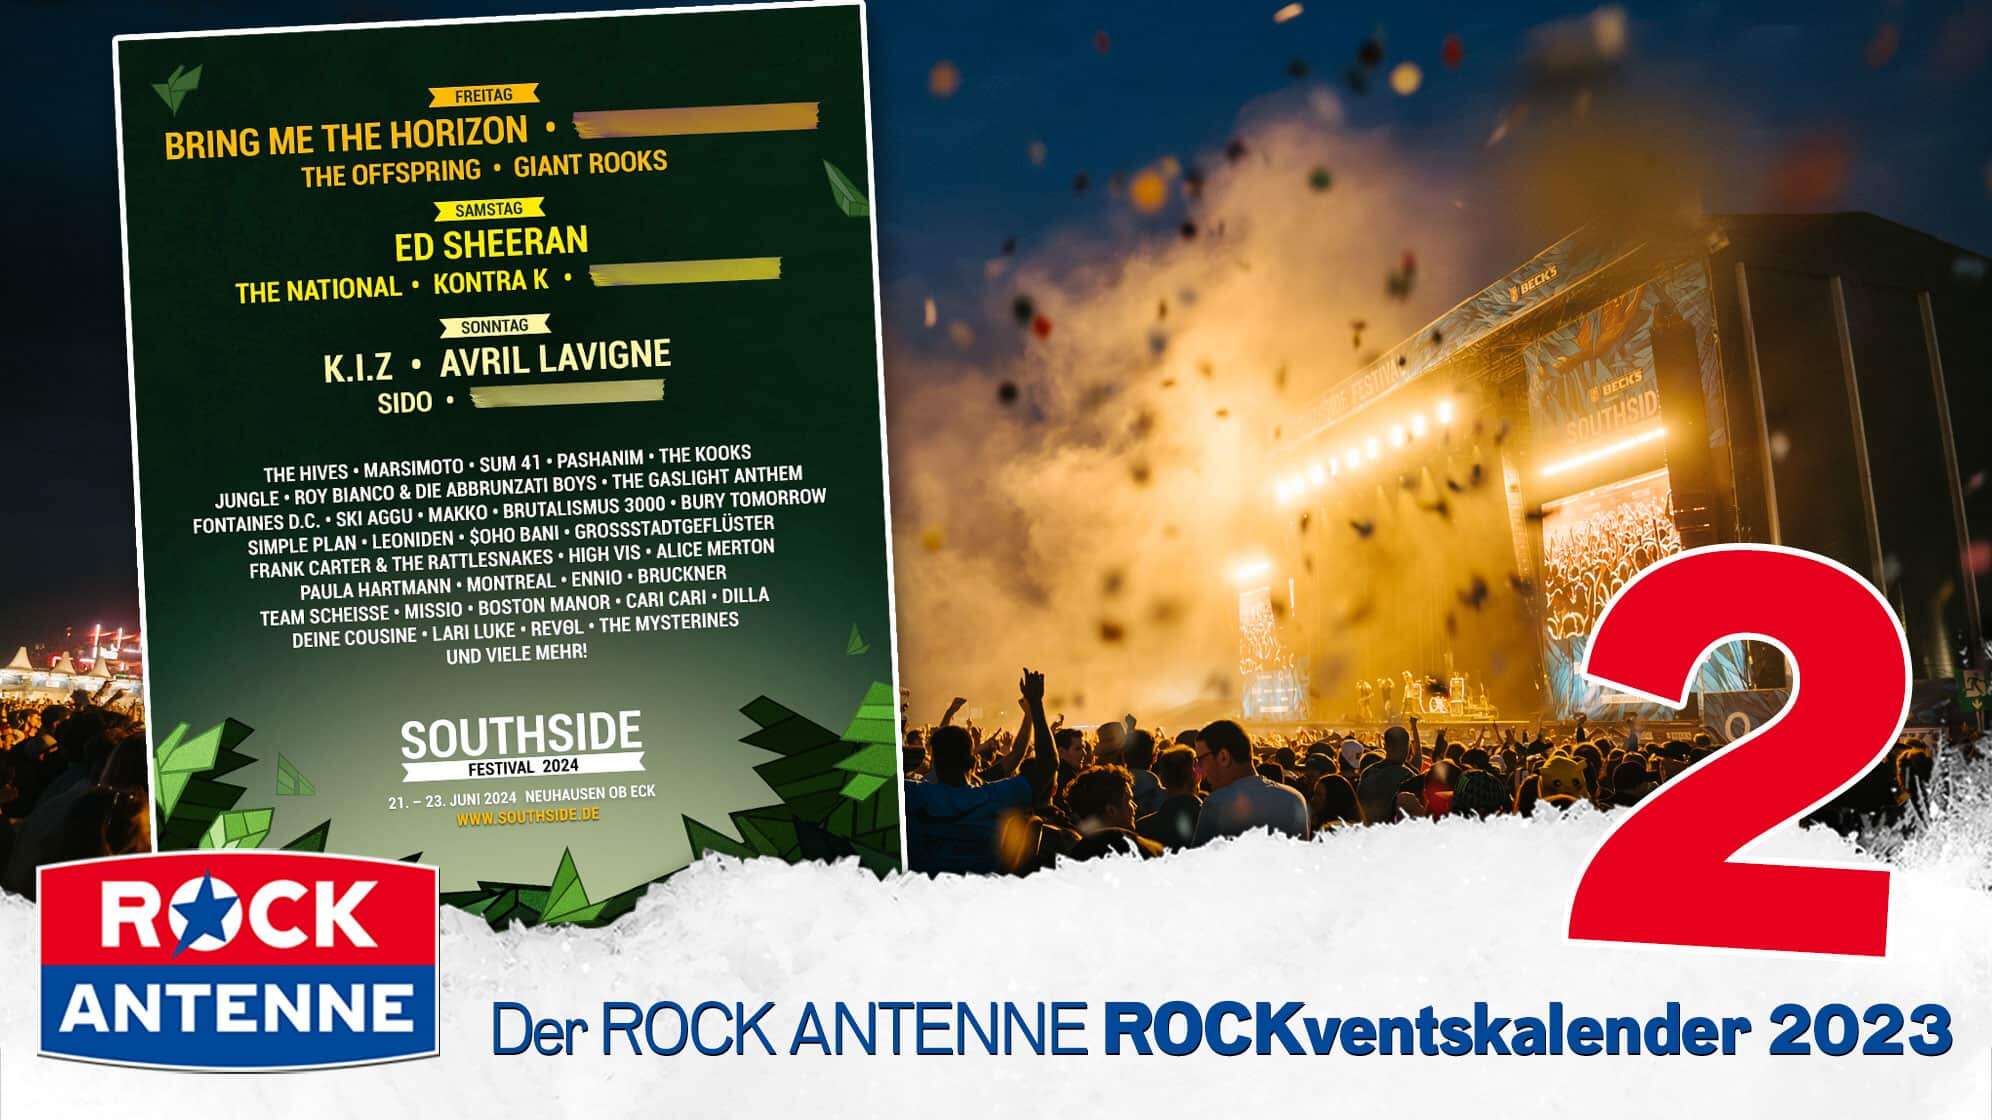 ROCK ANTENNE ROCKventskalender Türchen 2: 2 Festivaltickets für das Southside Festival 2024